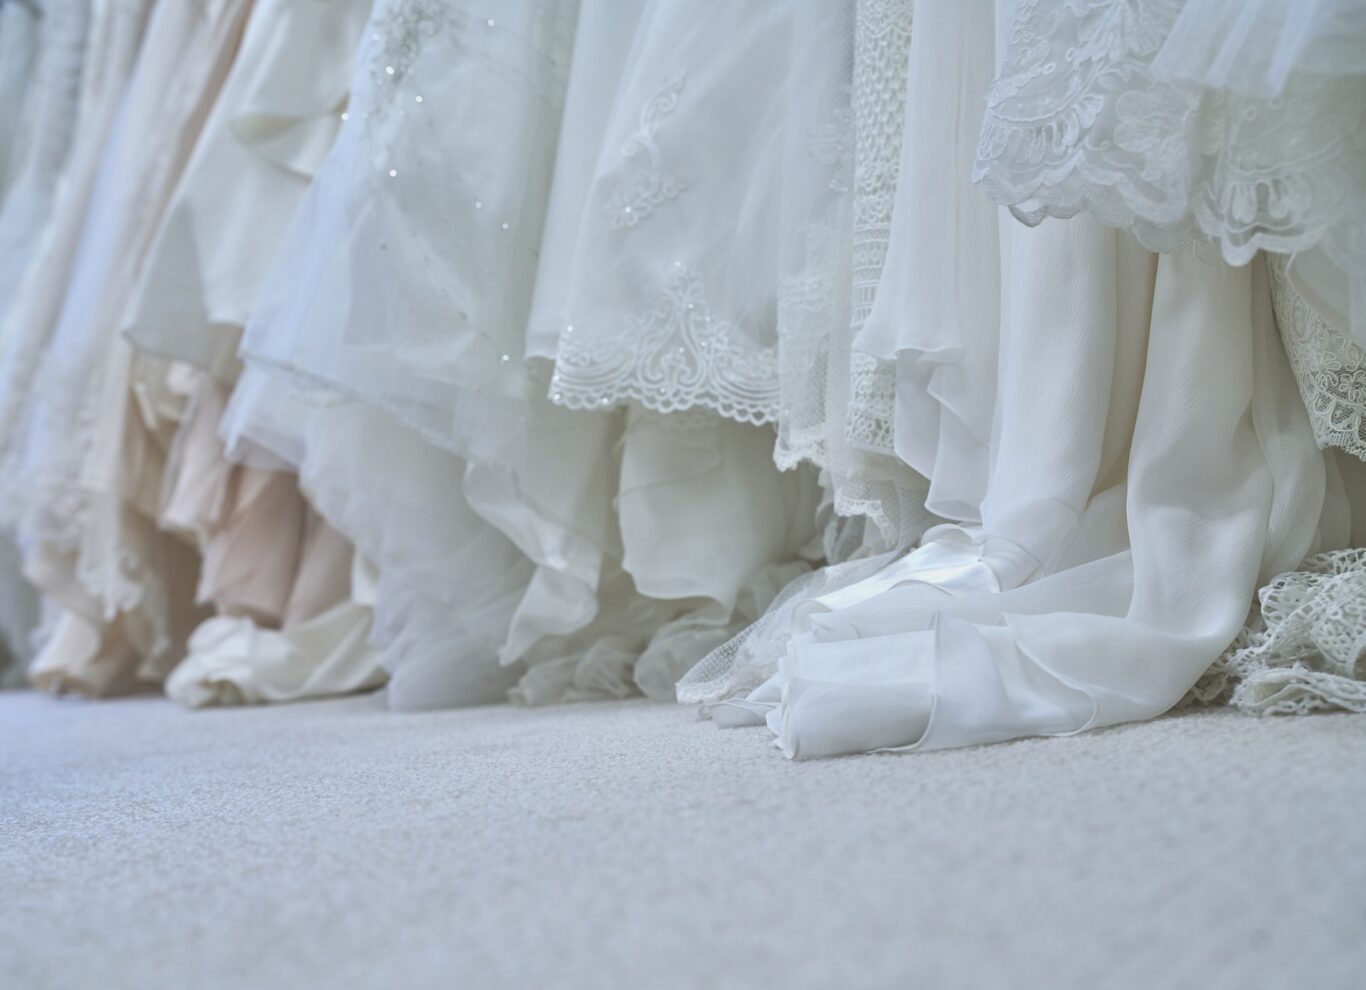 white wedding gowns